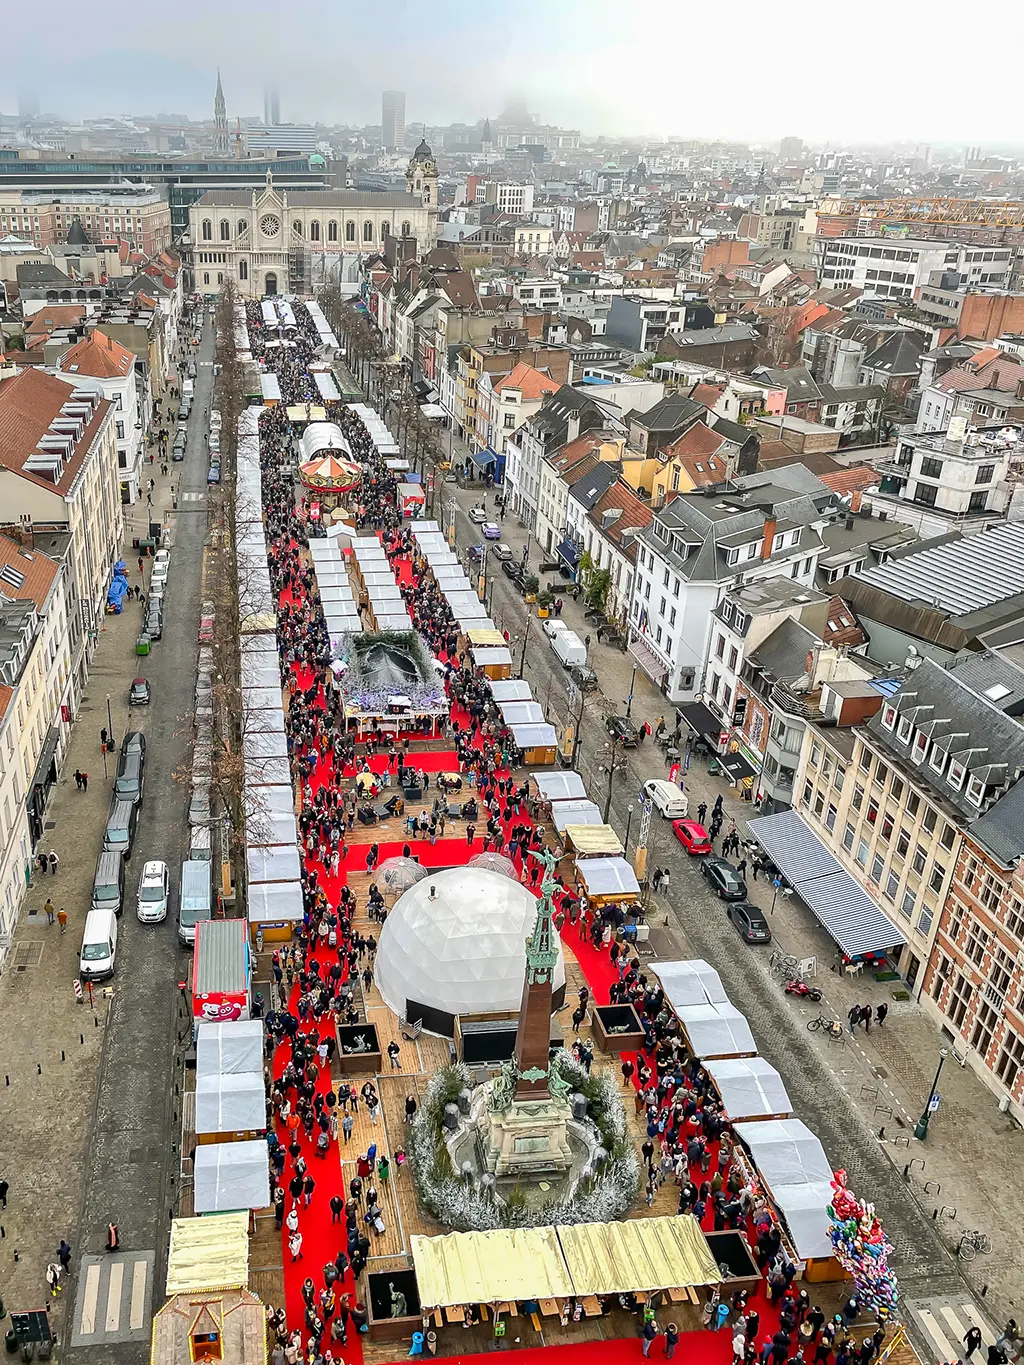 Marché de noël de Bruxelles : plaisirs d'hiver